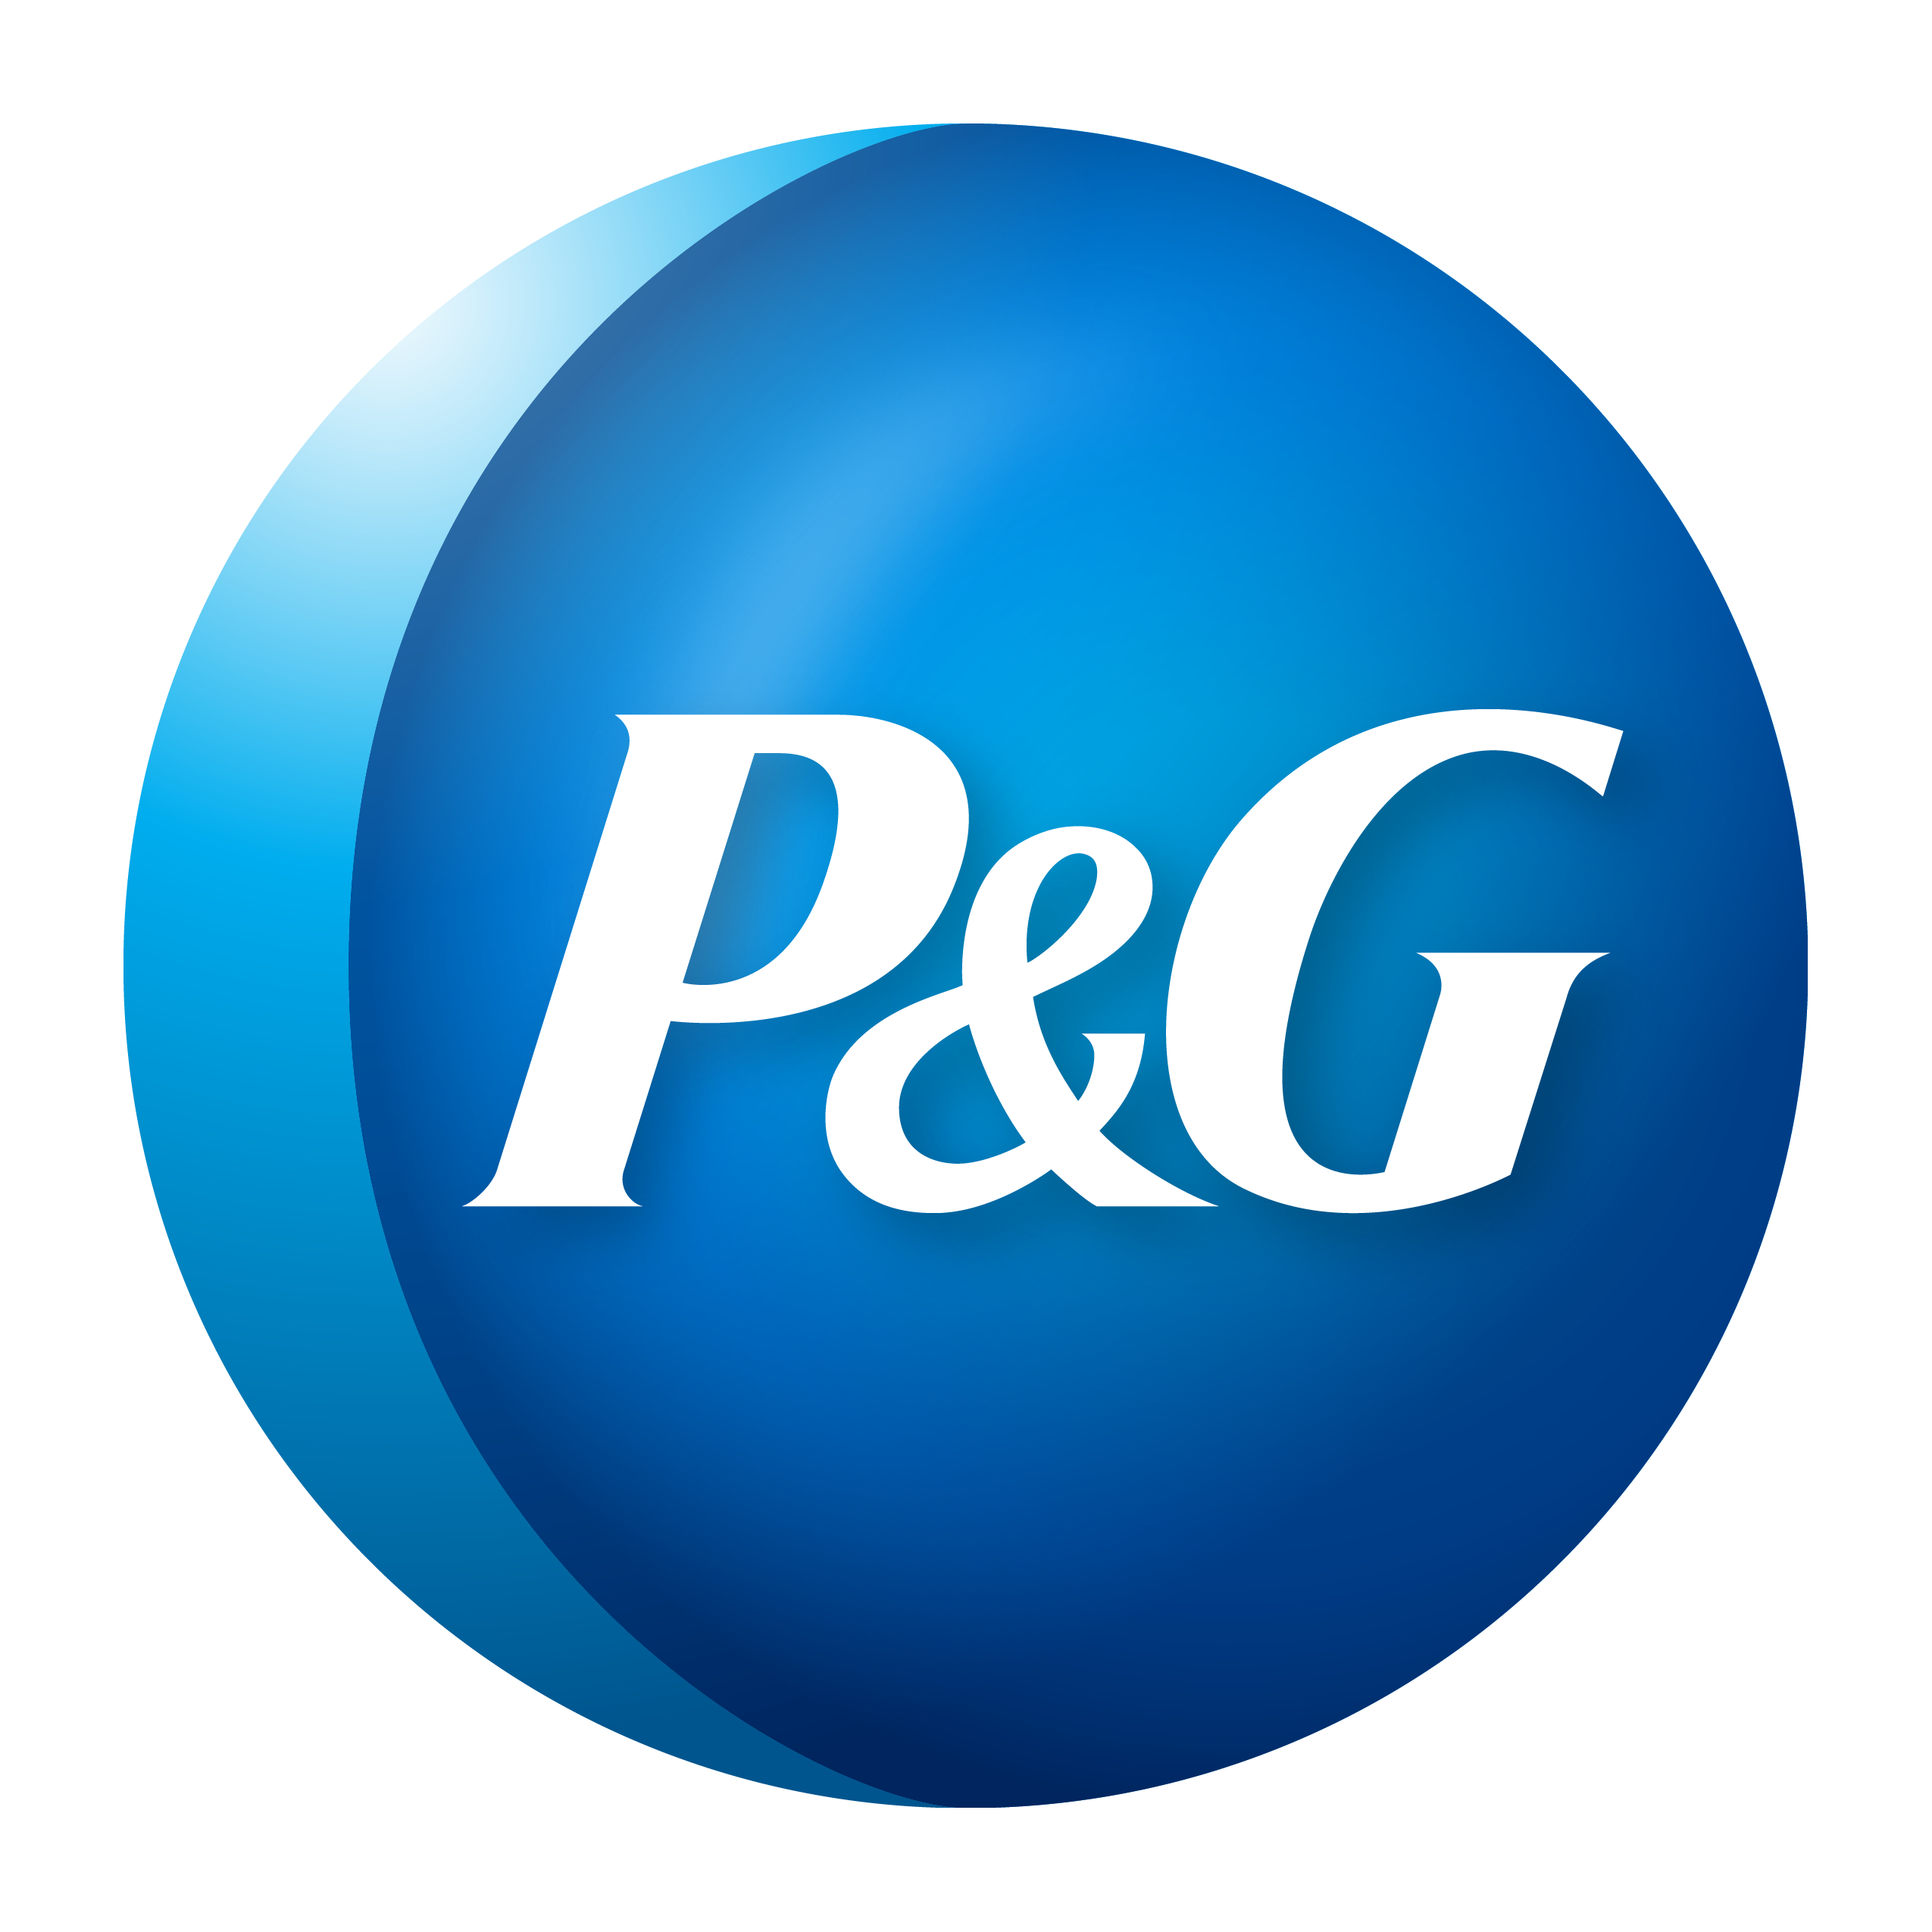 P&G Logo PNG Image